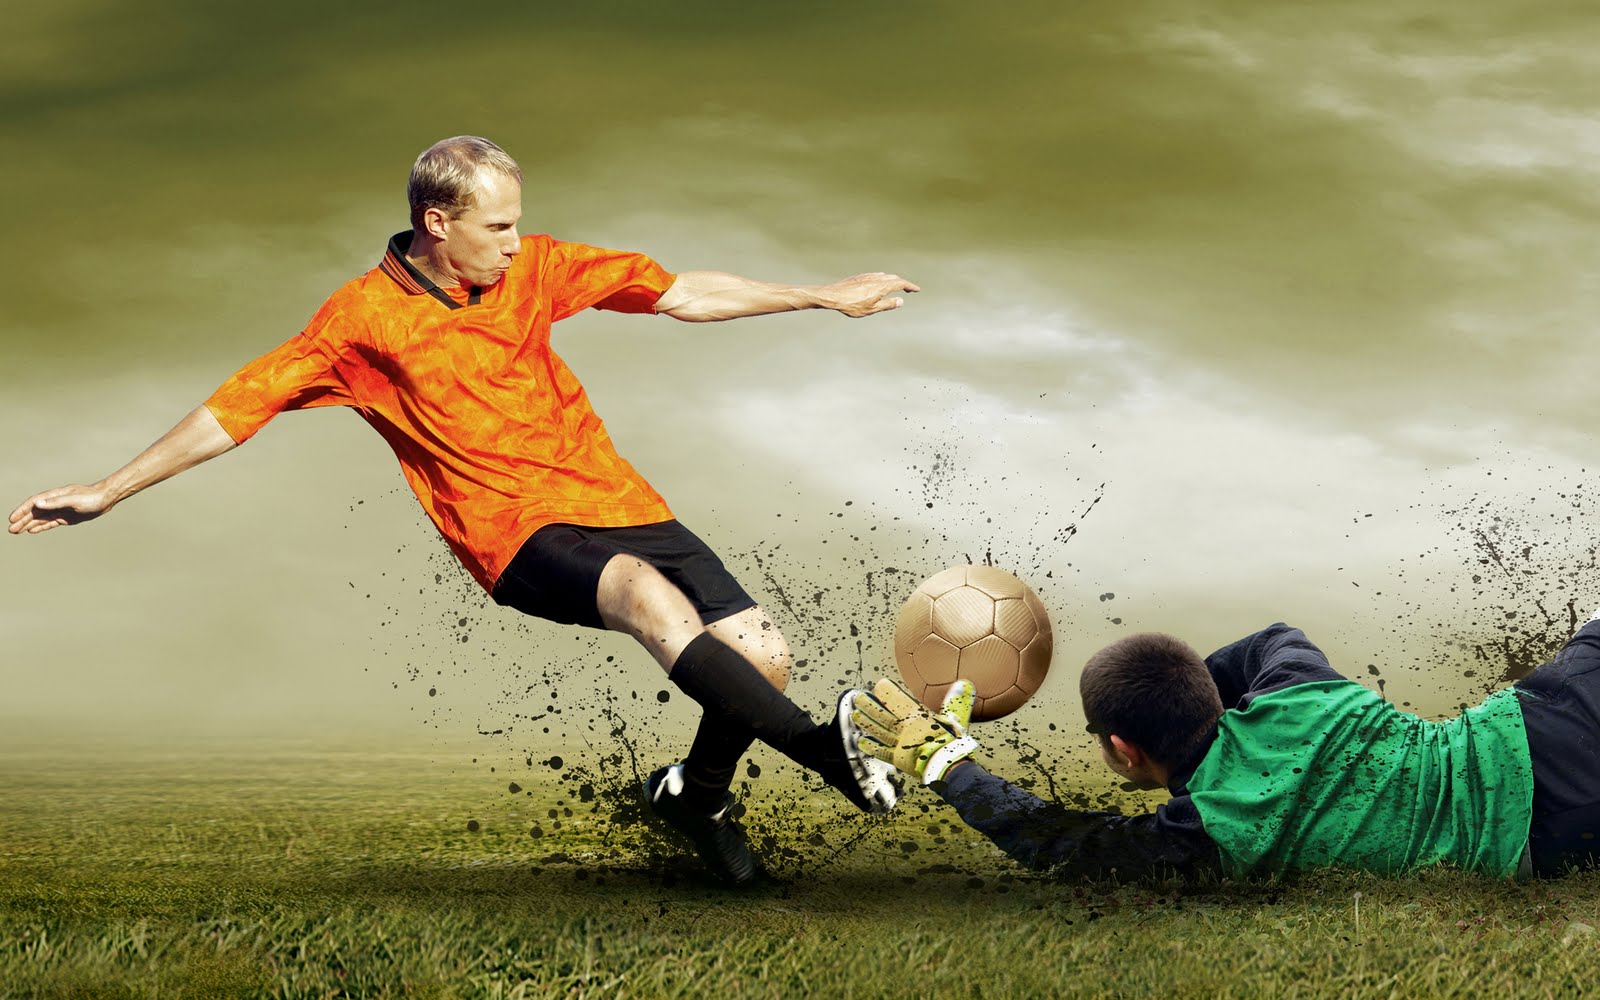 Banco de Imágenes Gratis: Vive la pasión del fútbol soccer (7